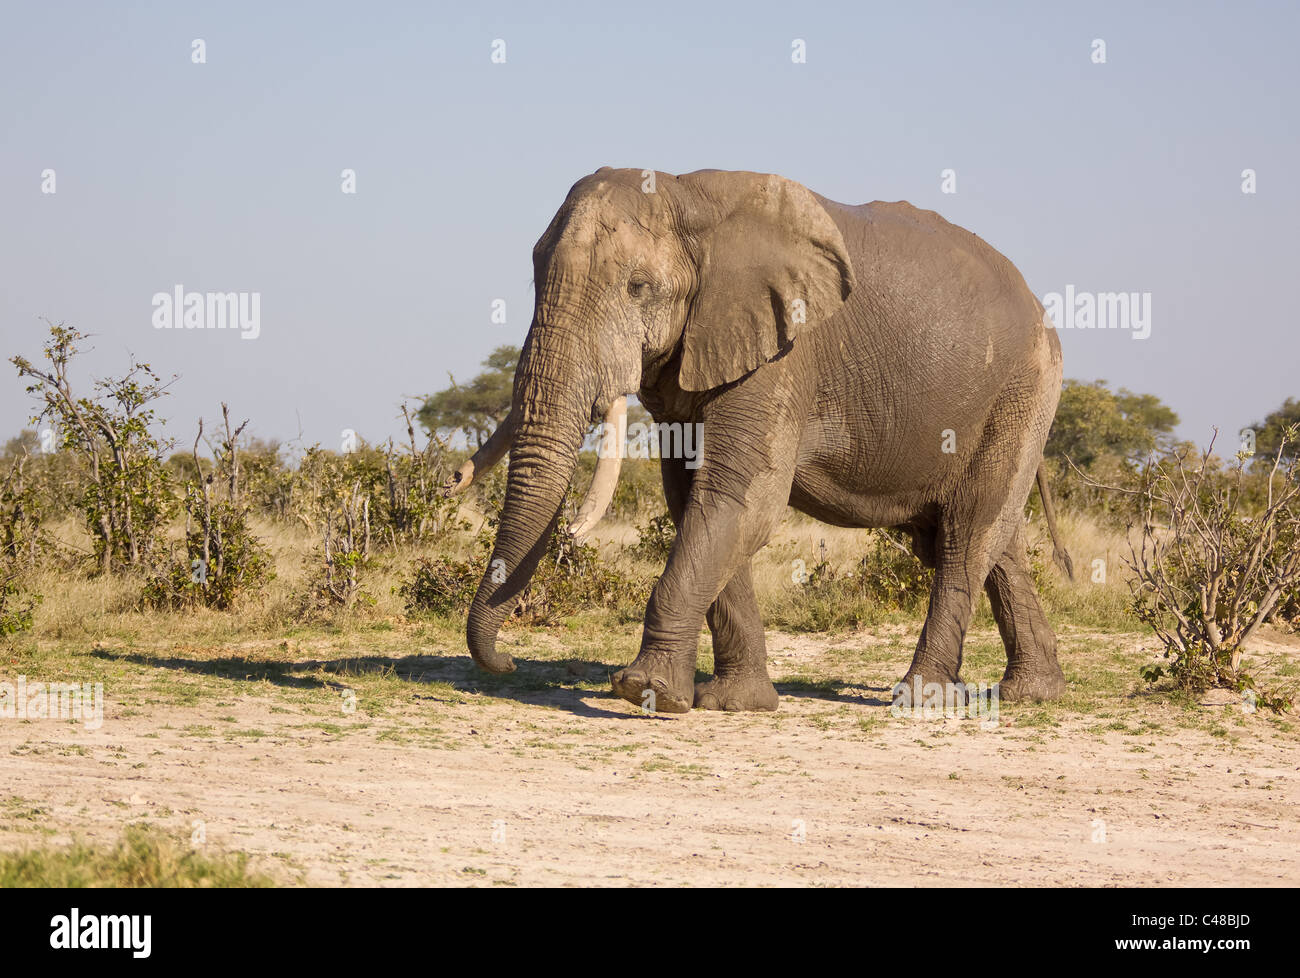 Afrikanischer Elefante africano (Loxodonta africana), im Wasser, Moremi Wildreservat, Botswana, Afrika Foto Stock